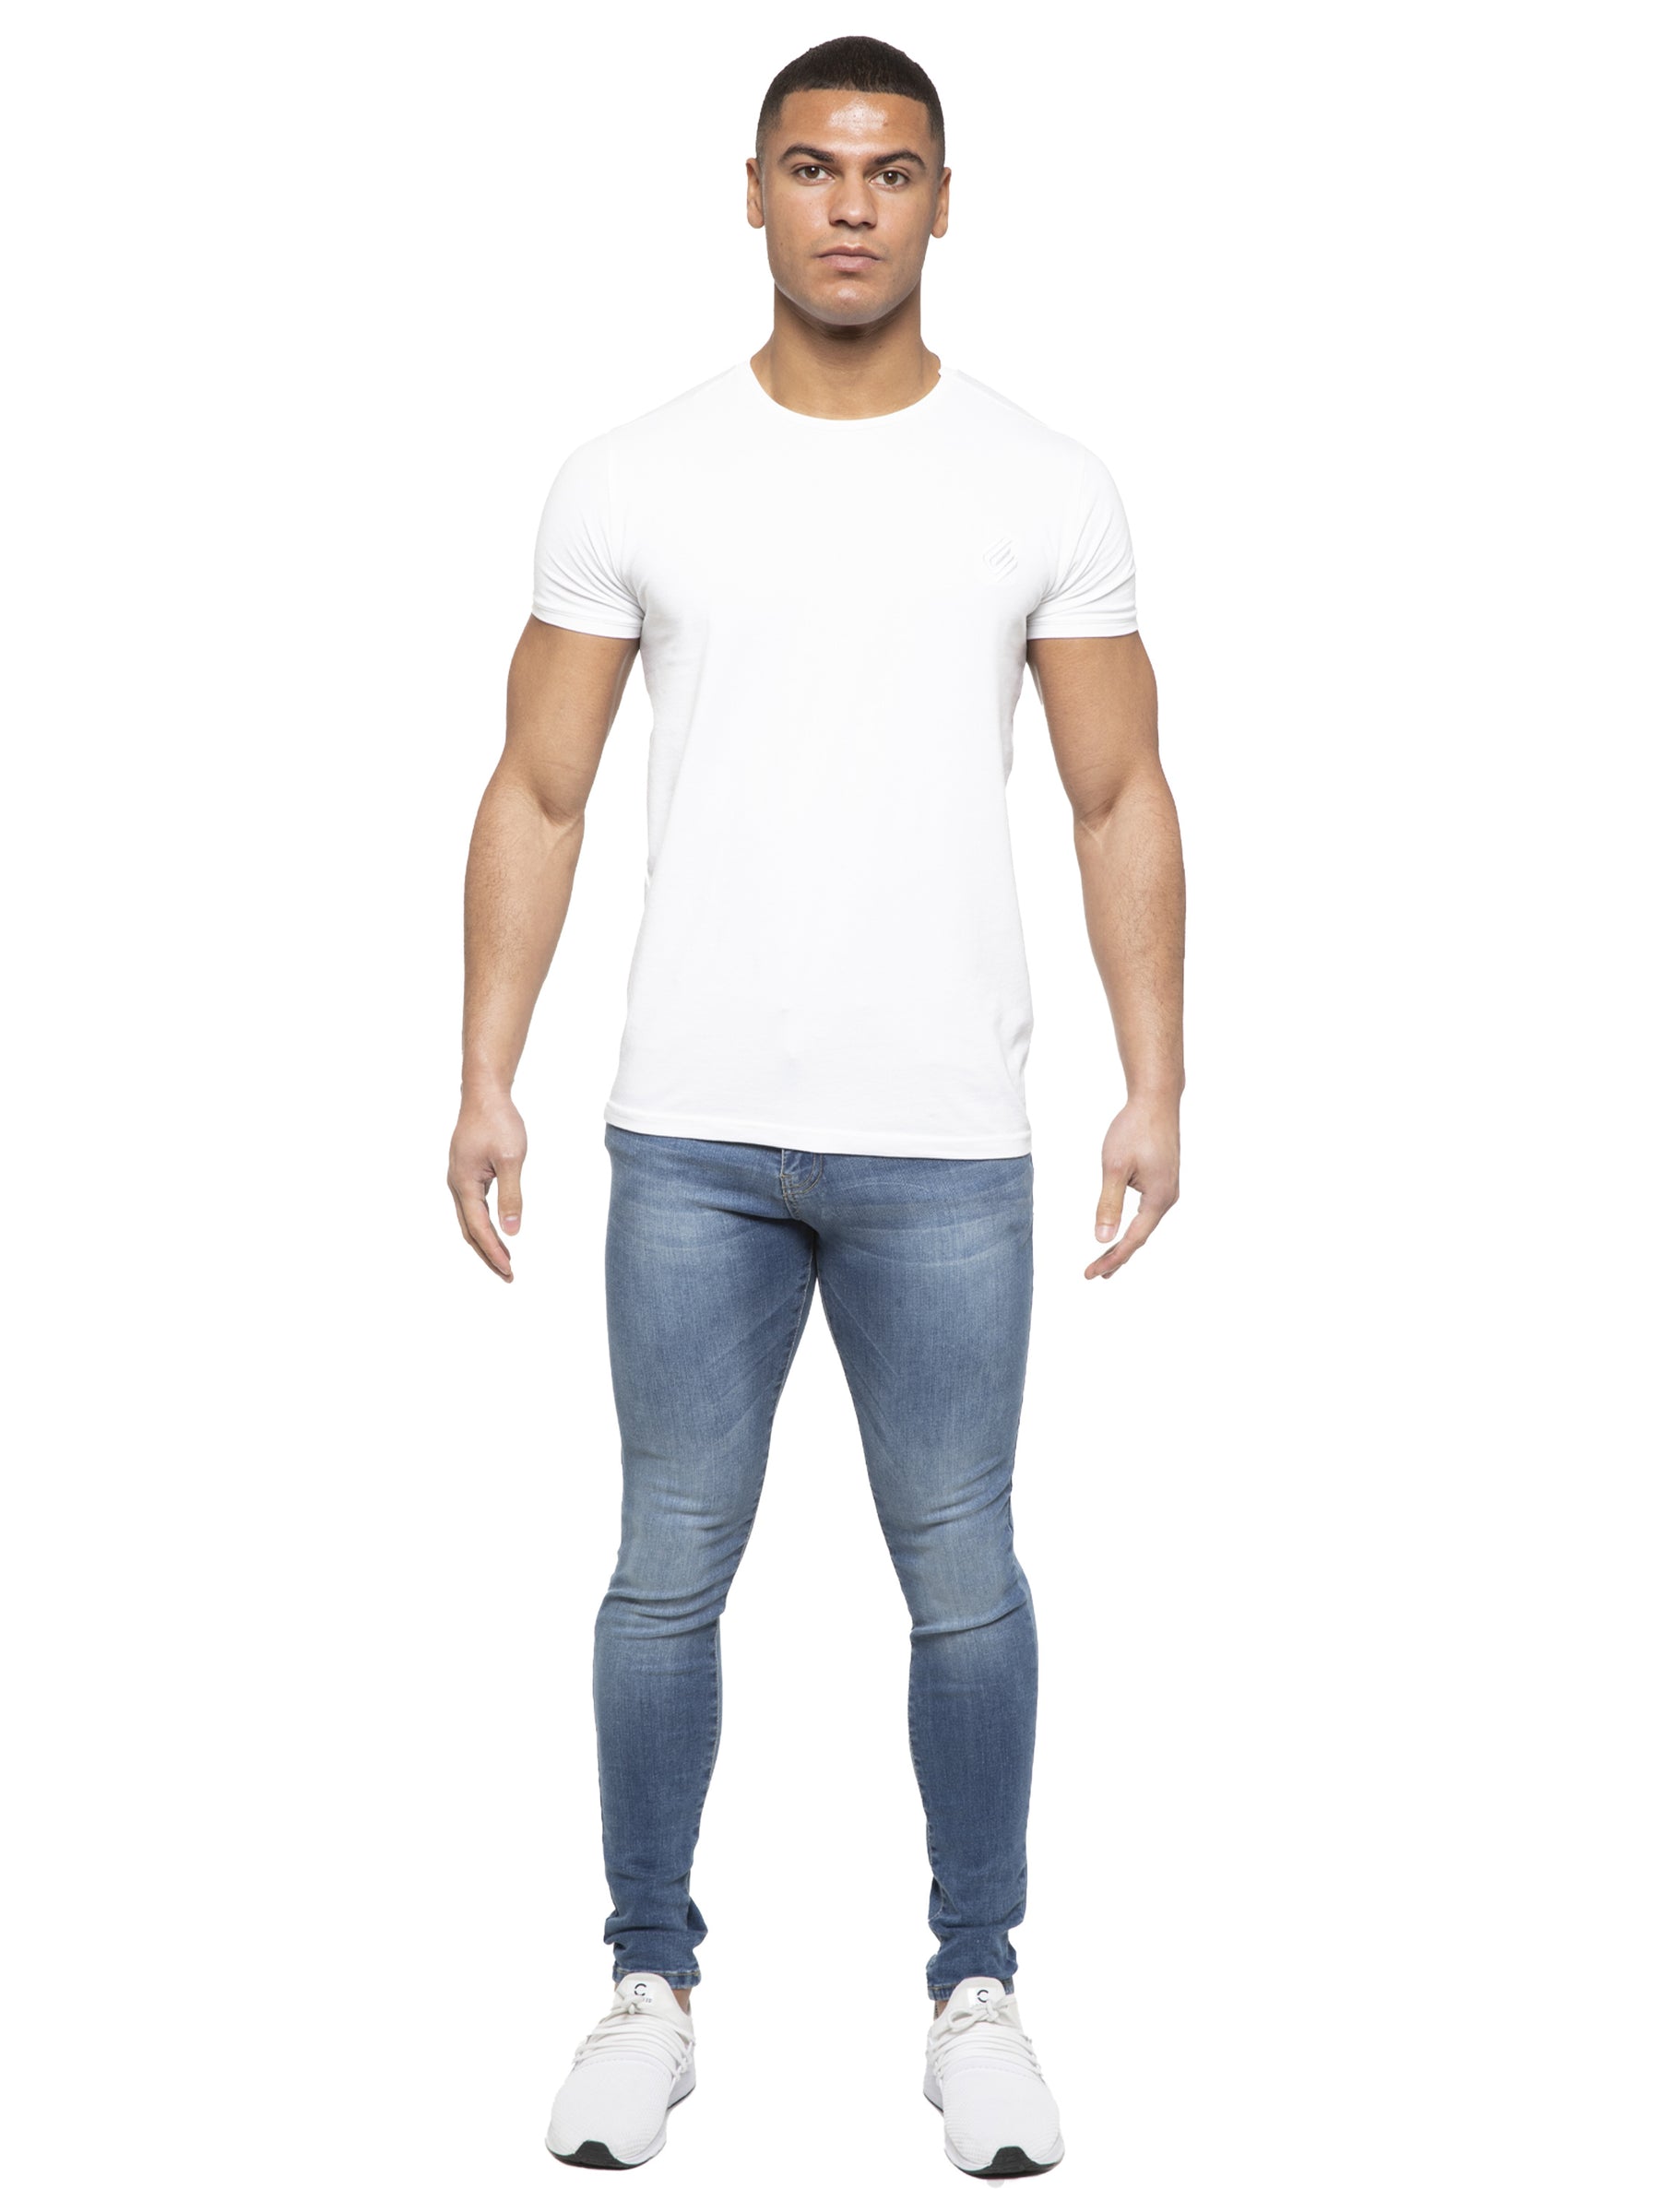 EM627 ETO | Mens Designer Slim Skinny Fit Stretch Jeans ETO RAWDENIM